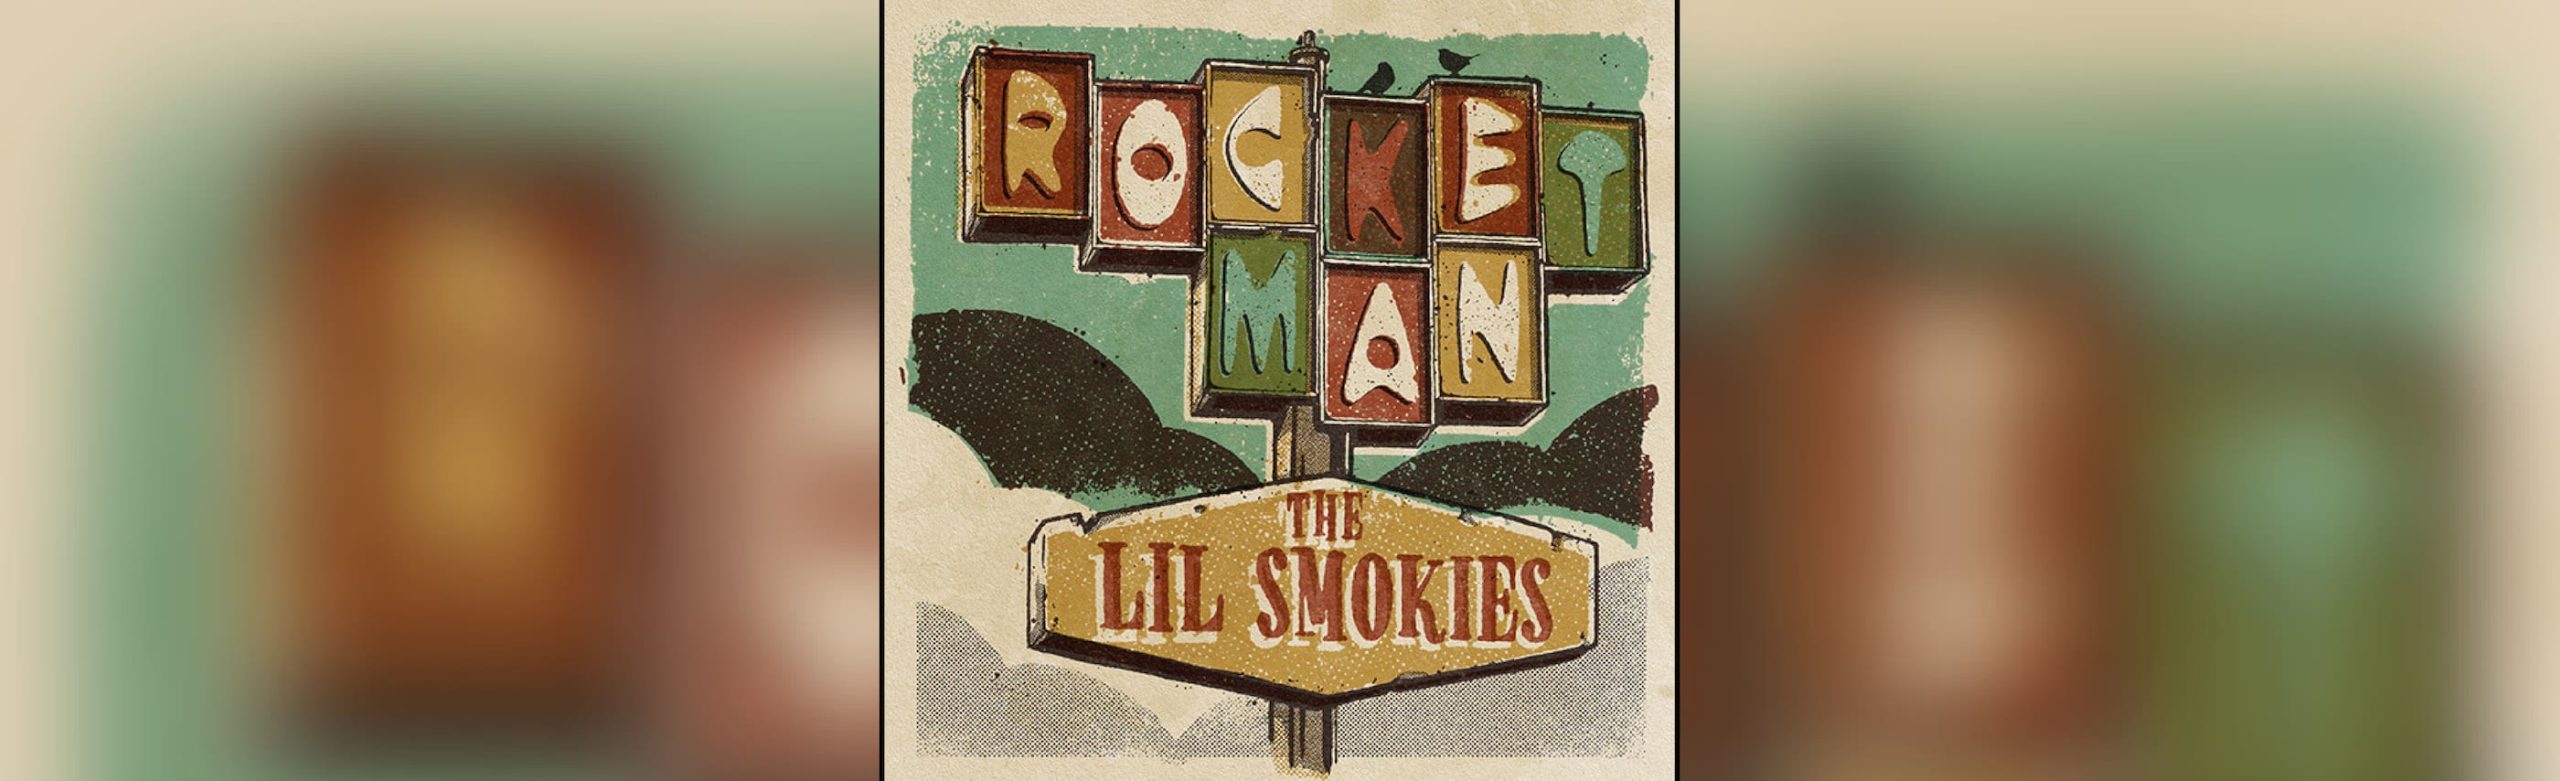 Lil Smokies Release Cover of Elton John’s “Rocket Man” Image